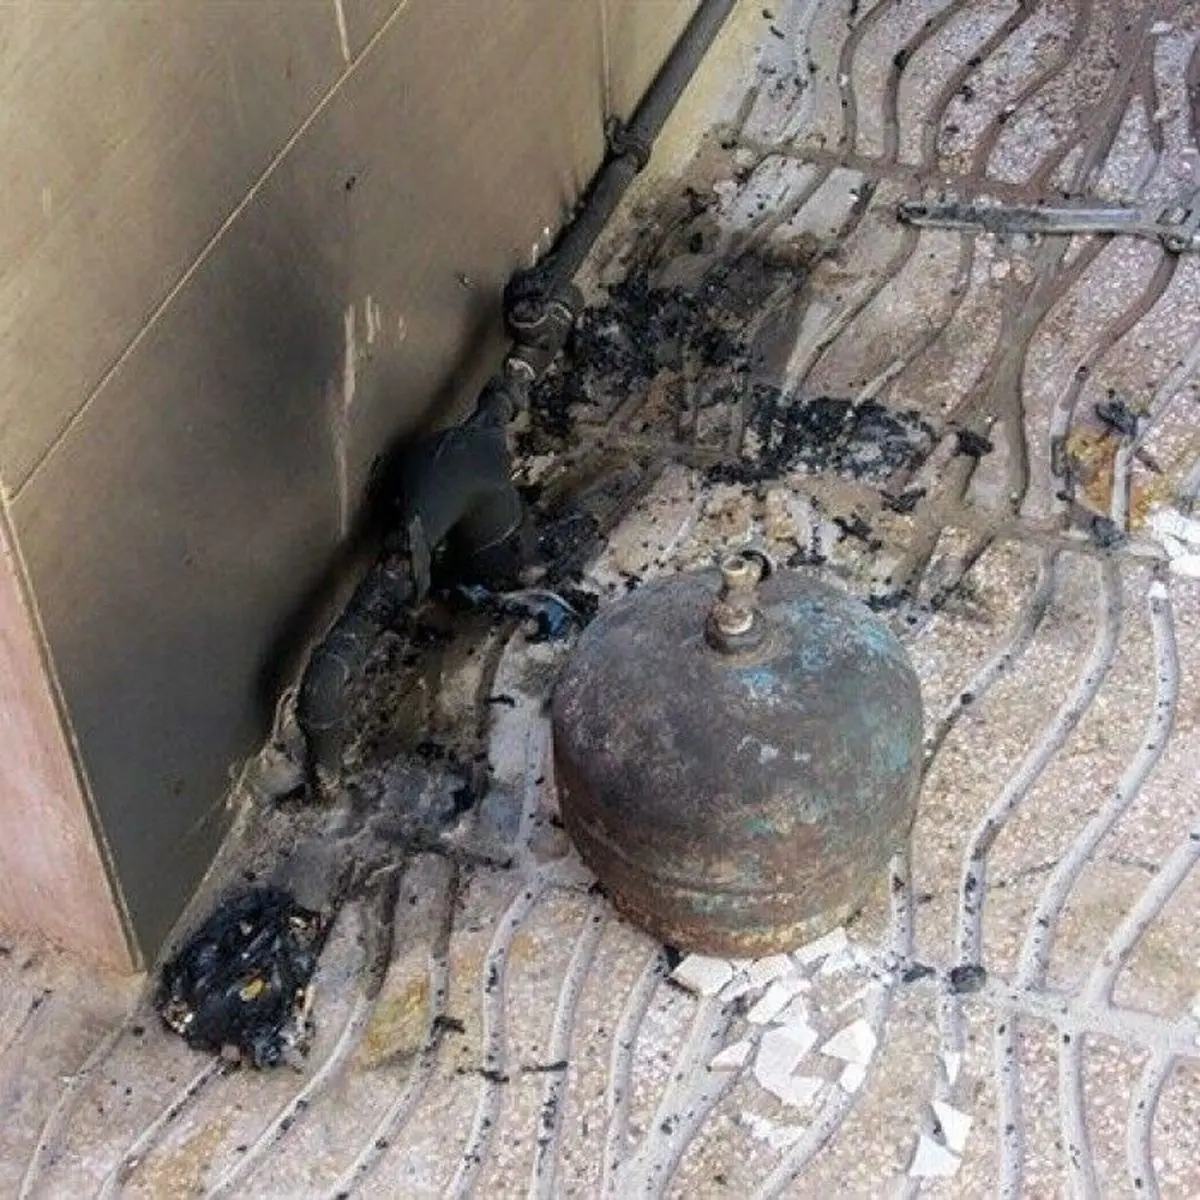  کپسول گاز در نارمک تهران منفجرشد